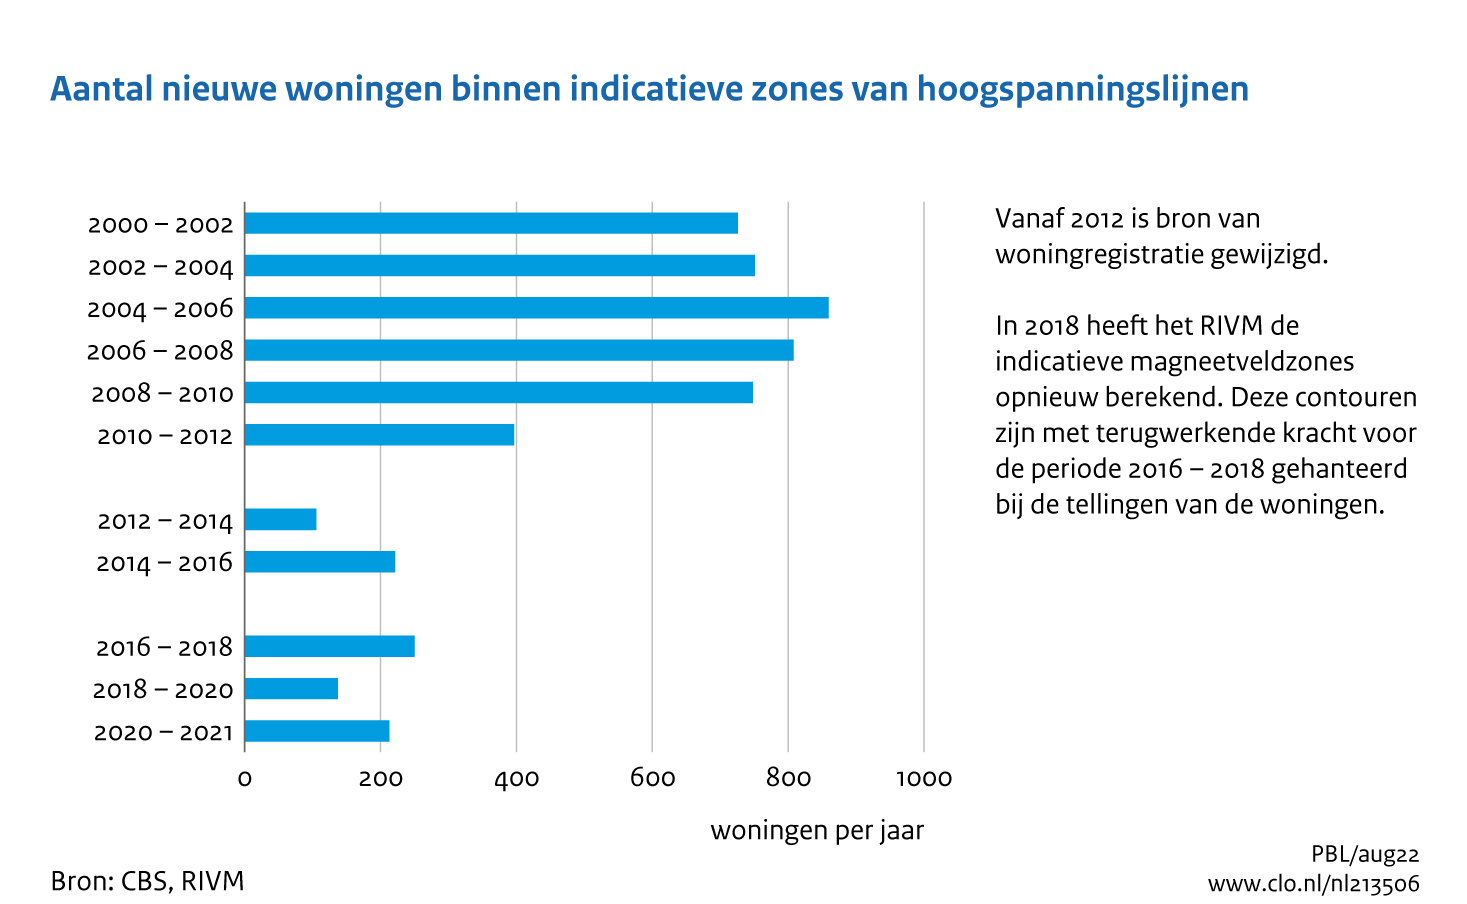 Figuur Aantal nieuwe woningen binnen indicatieve zones van hoogspanningslijnen, 2000-2021 . In de rest van de tekst wordt deze figuur uitgebreider uitgelegd.